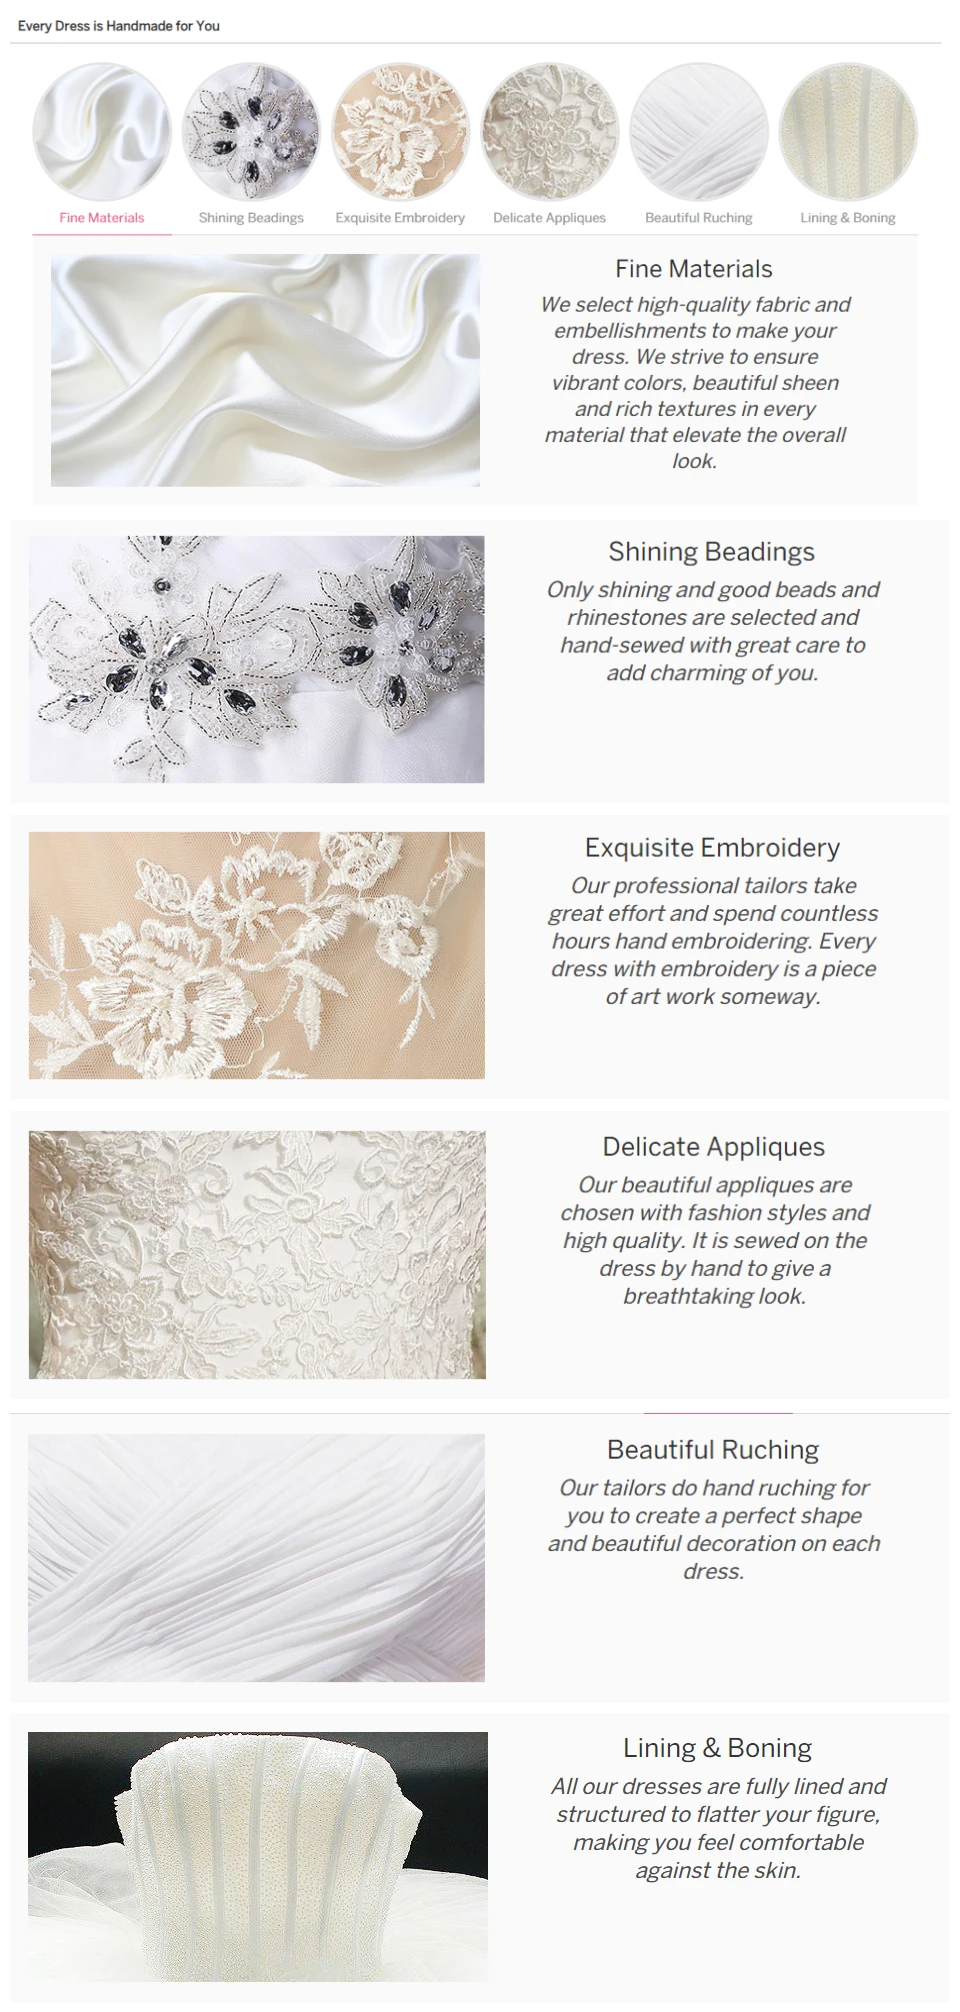 Vestidos De Noiva/Свадебные платья с длинными рукавами трапециевидной формы, кружевные аппликации с круглым вырезом и жемчу